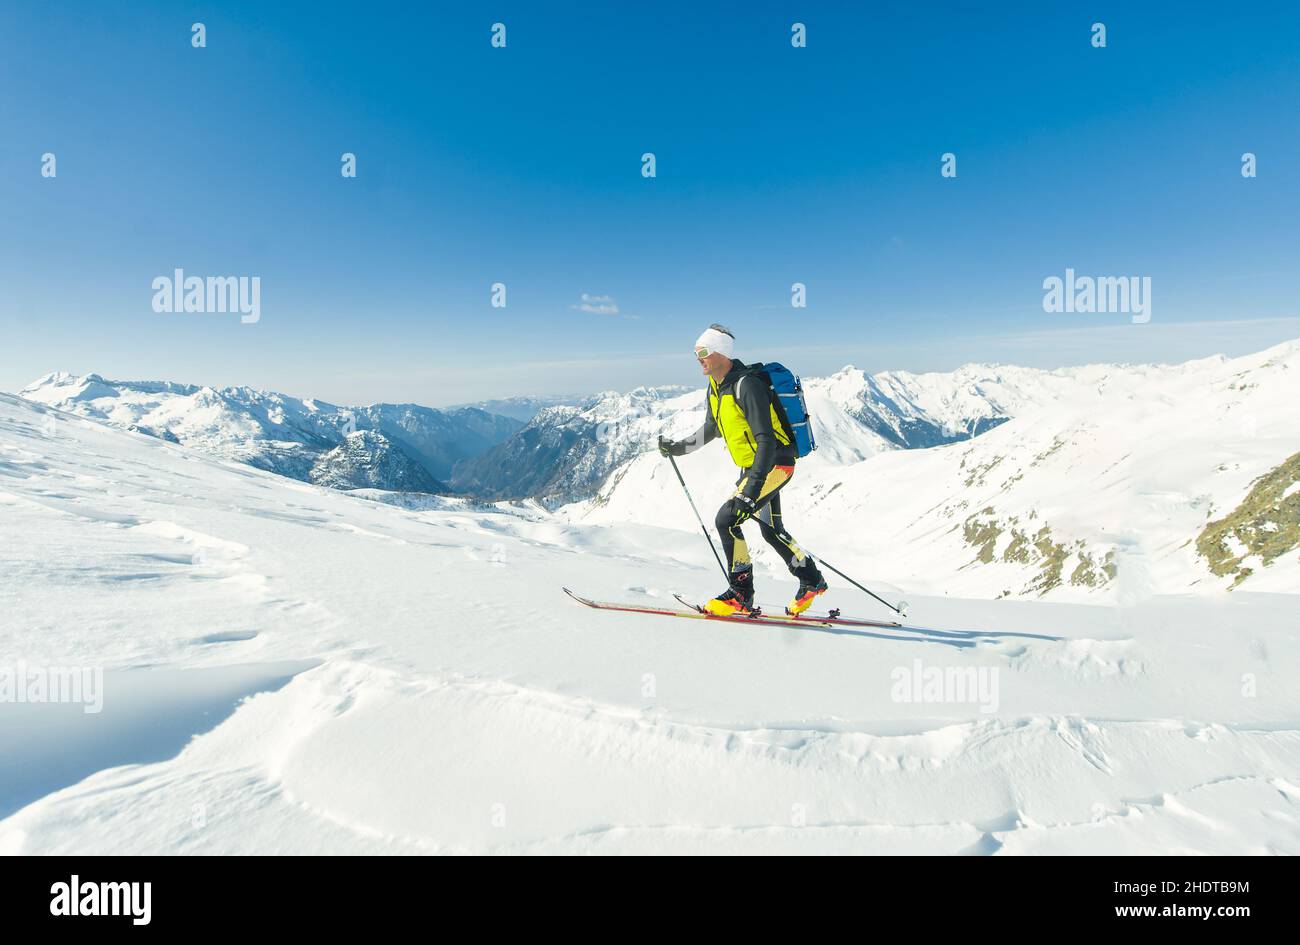 Un alpiniste en solo monte avec des peaux de phoque sous ses skis Banque D'Images